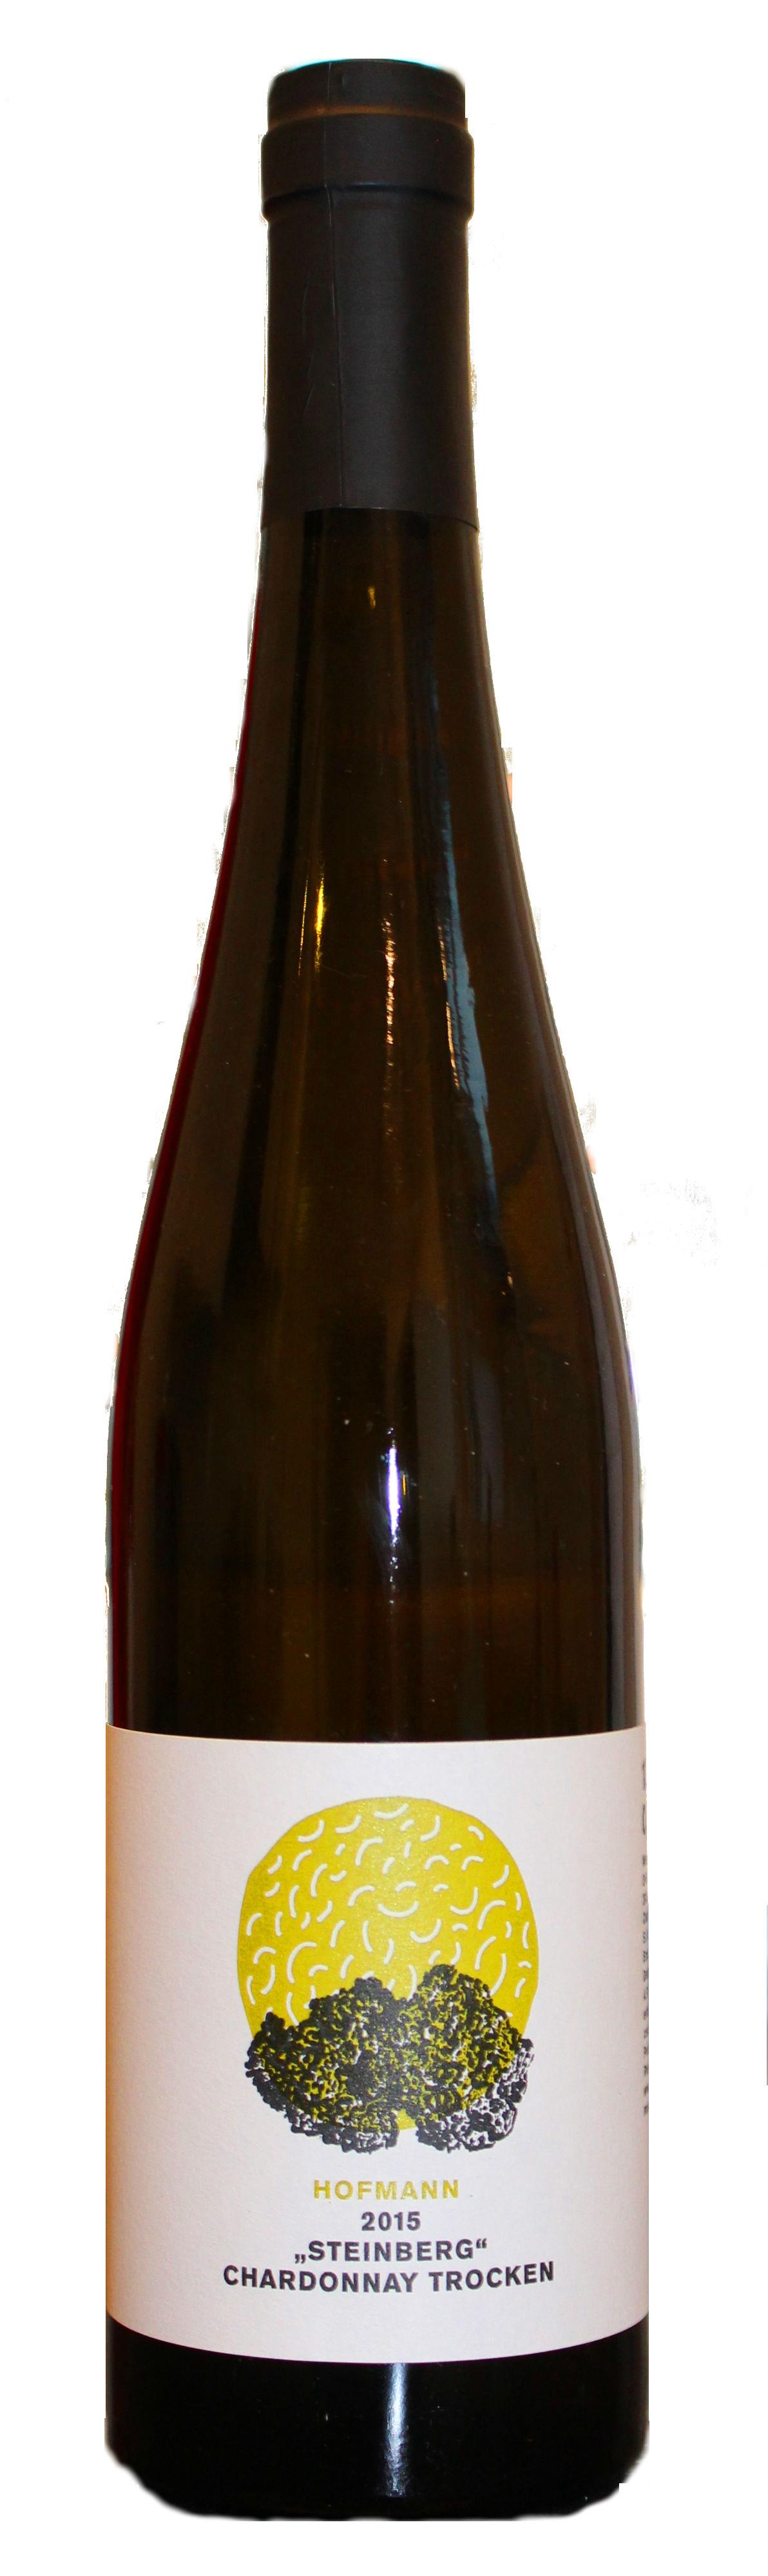 2015 Chardonnay "Steinberg" Qualitätswein